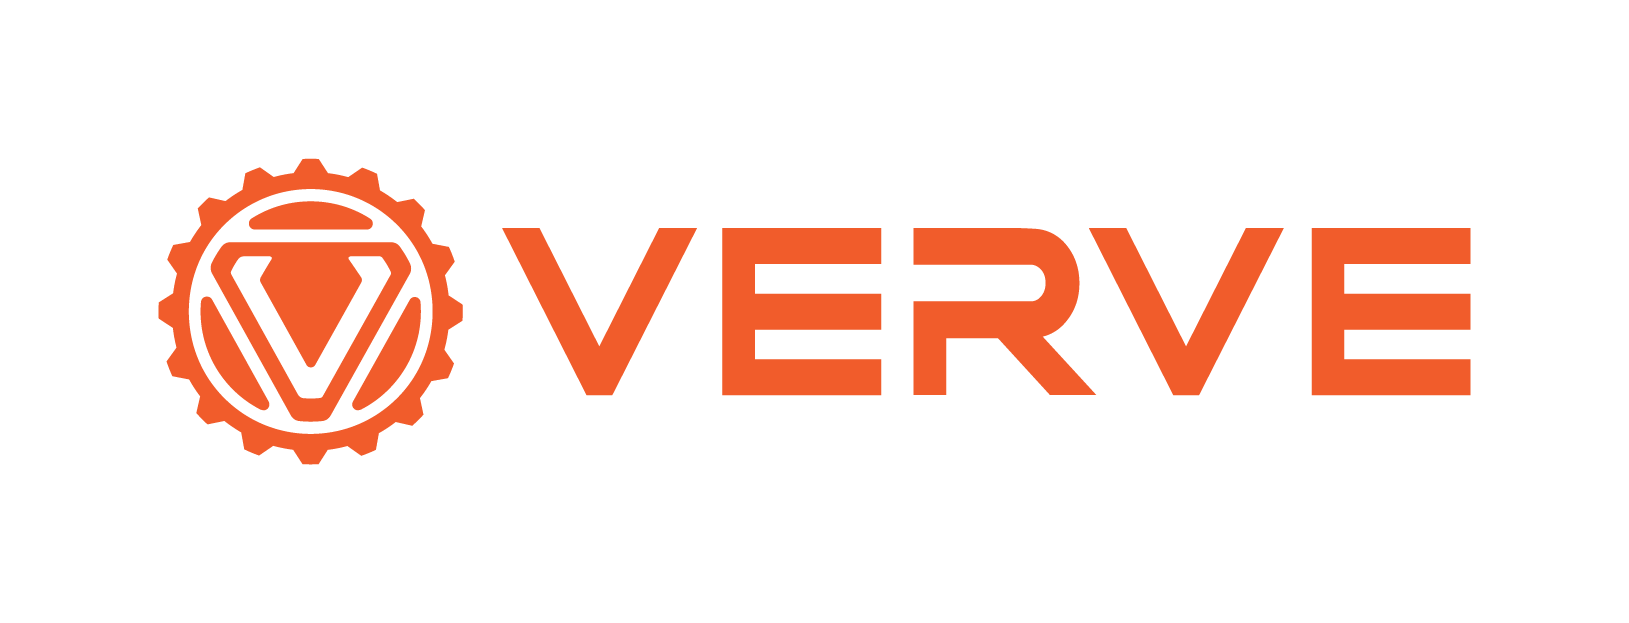 Verve-Logo-01.png